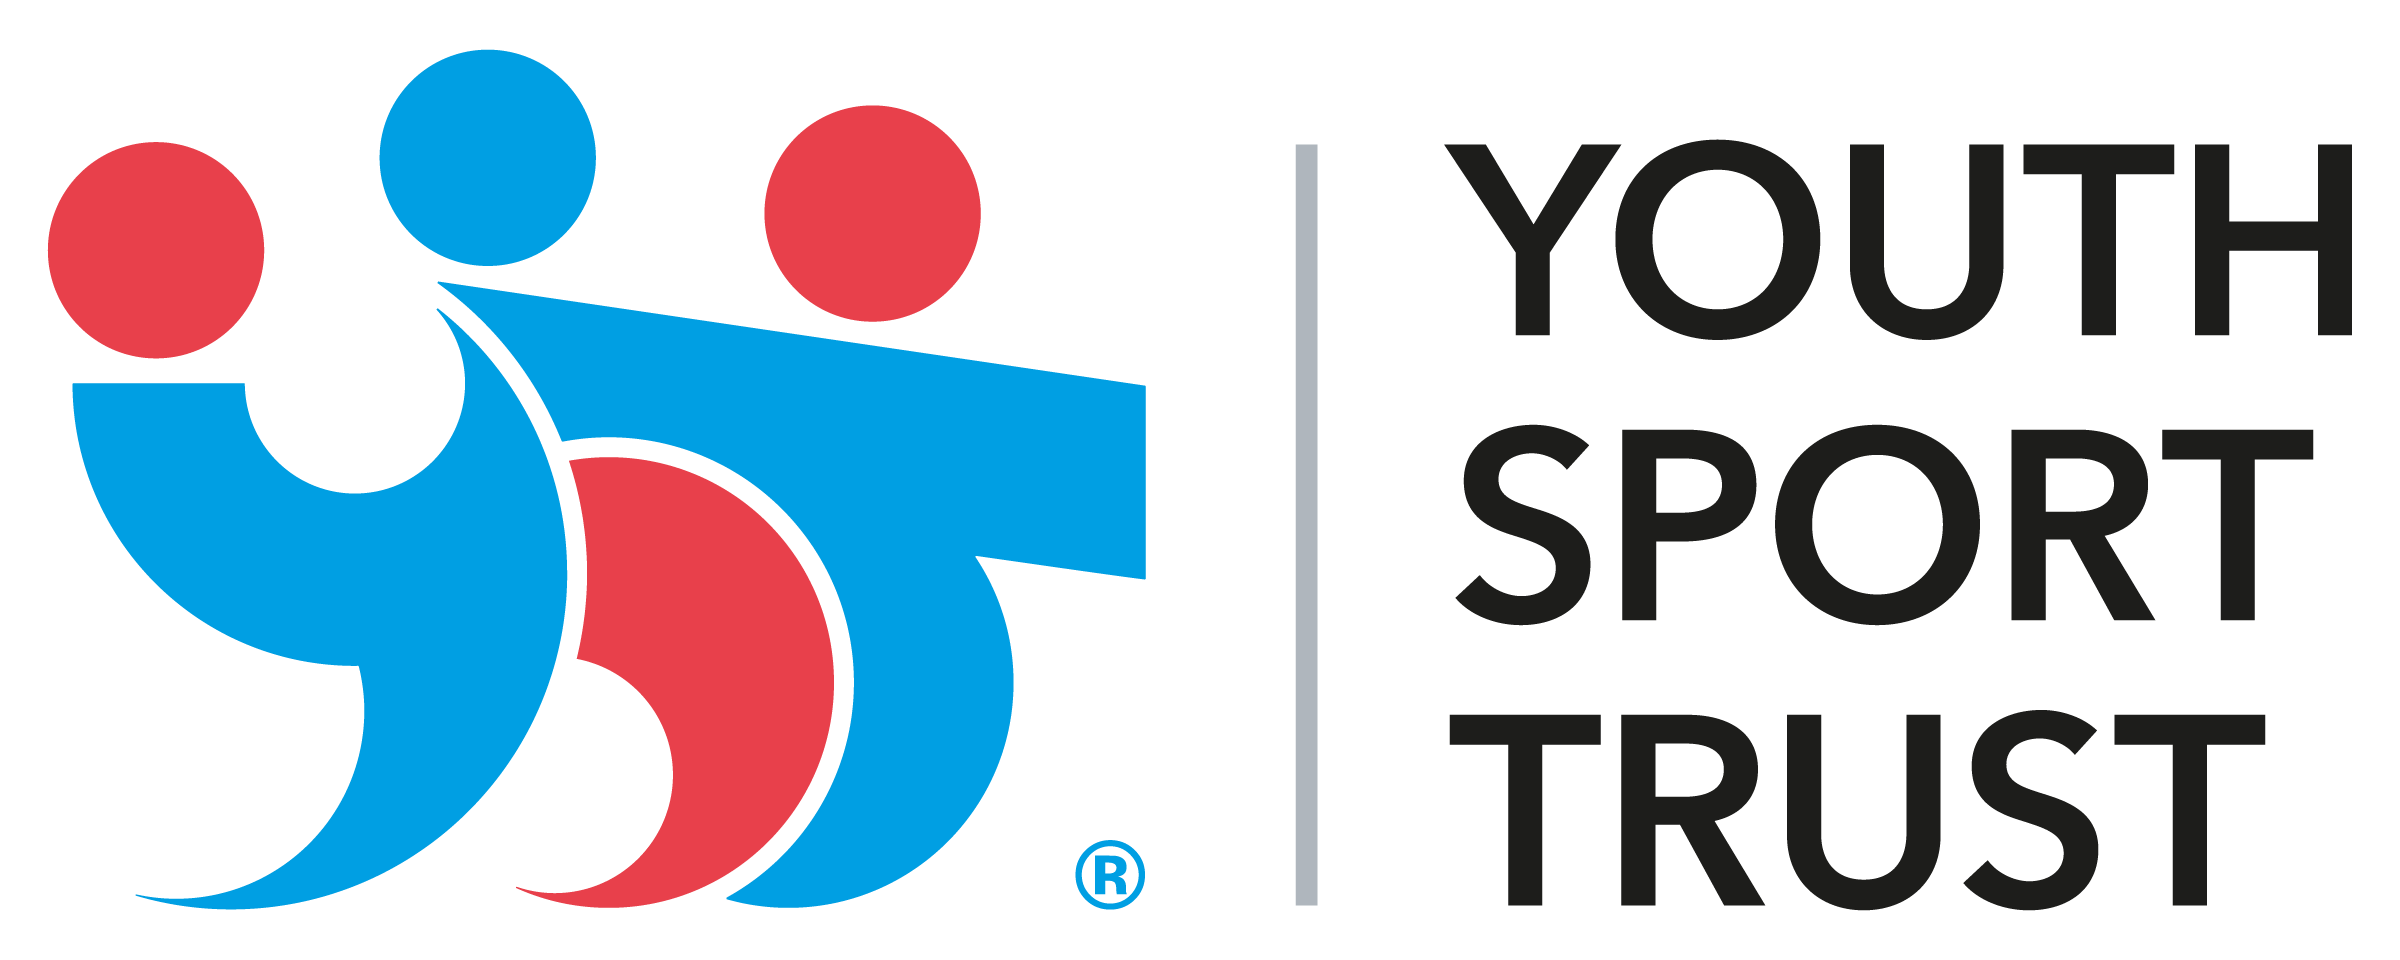 YST-logo-2016-rgb-lt-back-lrg